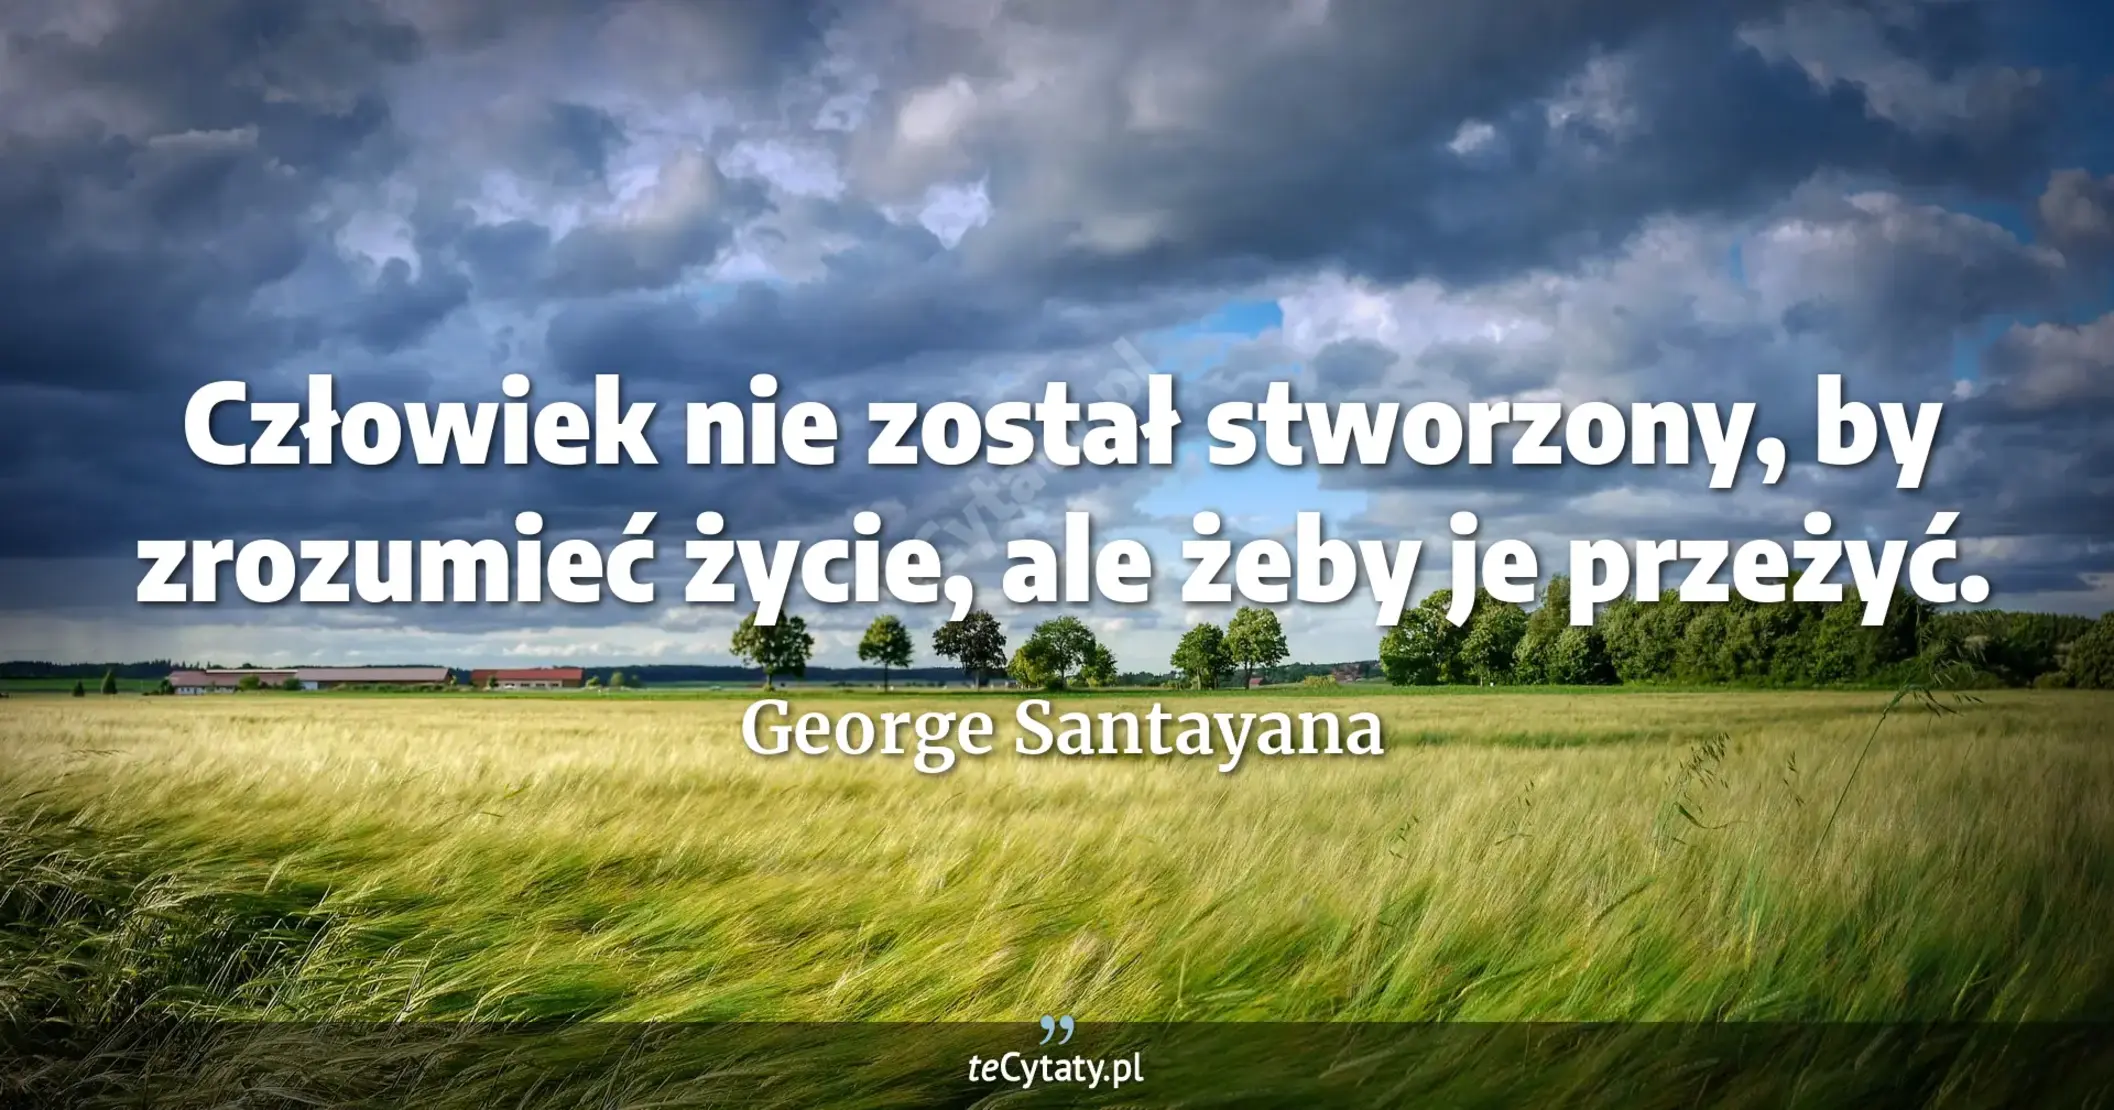 Człowiek nie został stworzony, by zrozumieć życie, ale żeby je przeżyć. - George Santayana